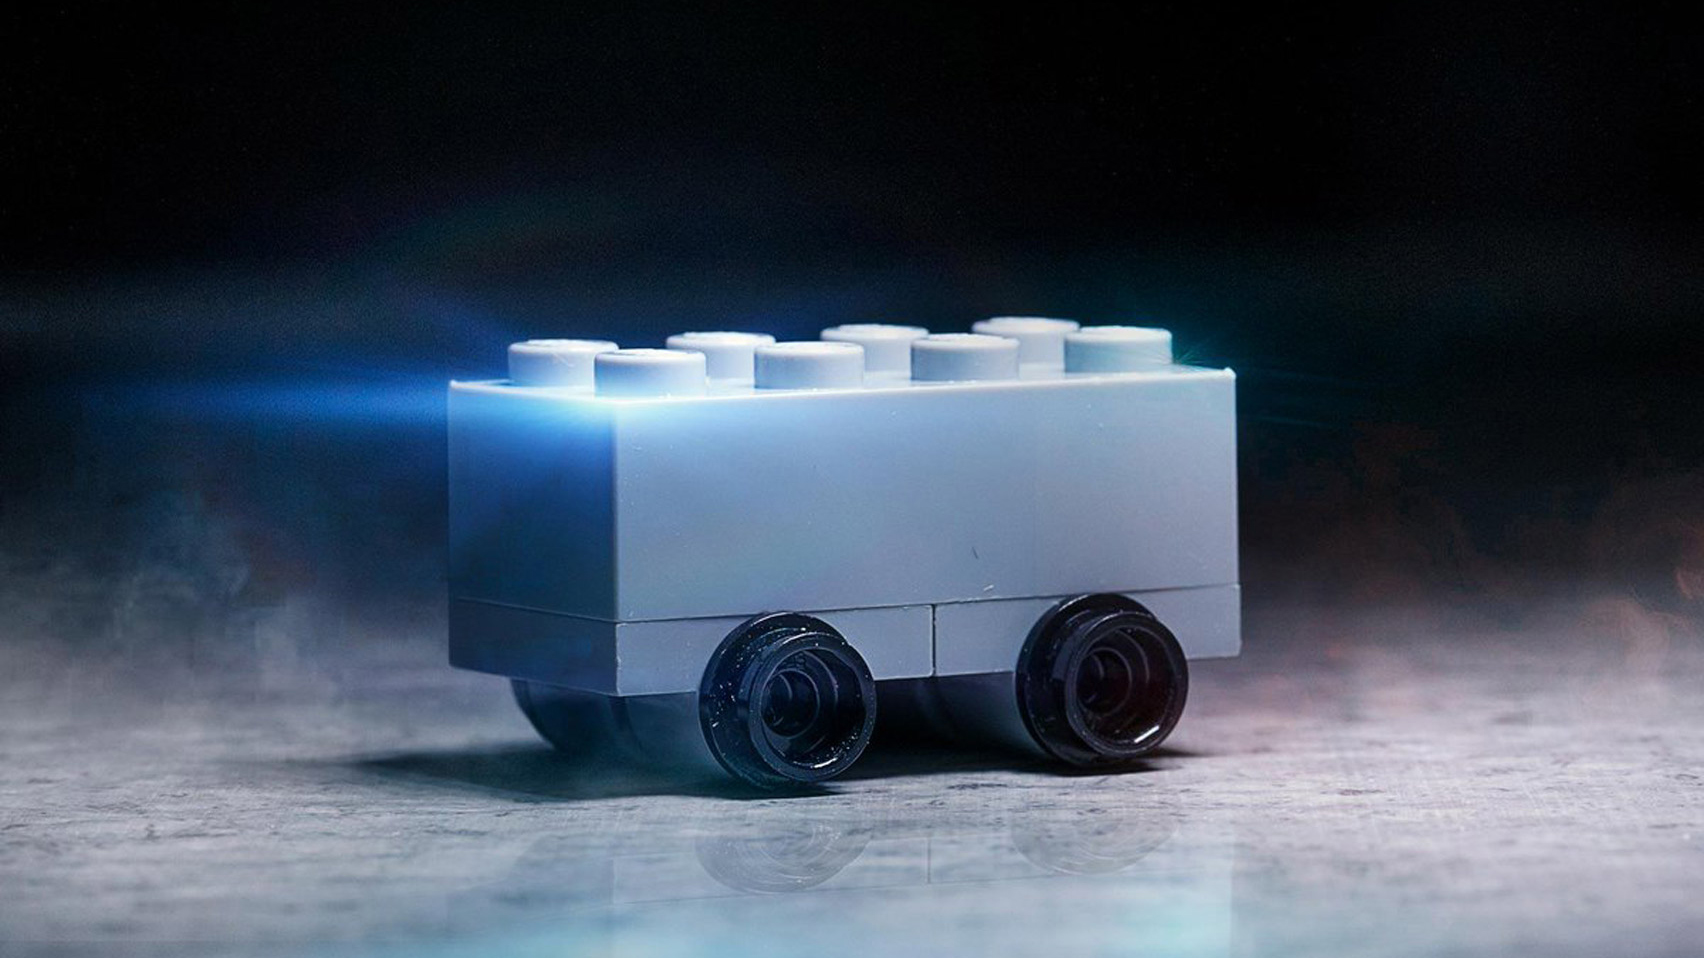 Lego mocks Tesla with “guaranteed shatterproof” brick model of Cybertruck